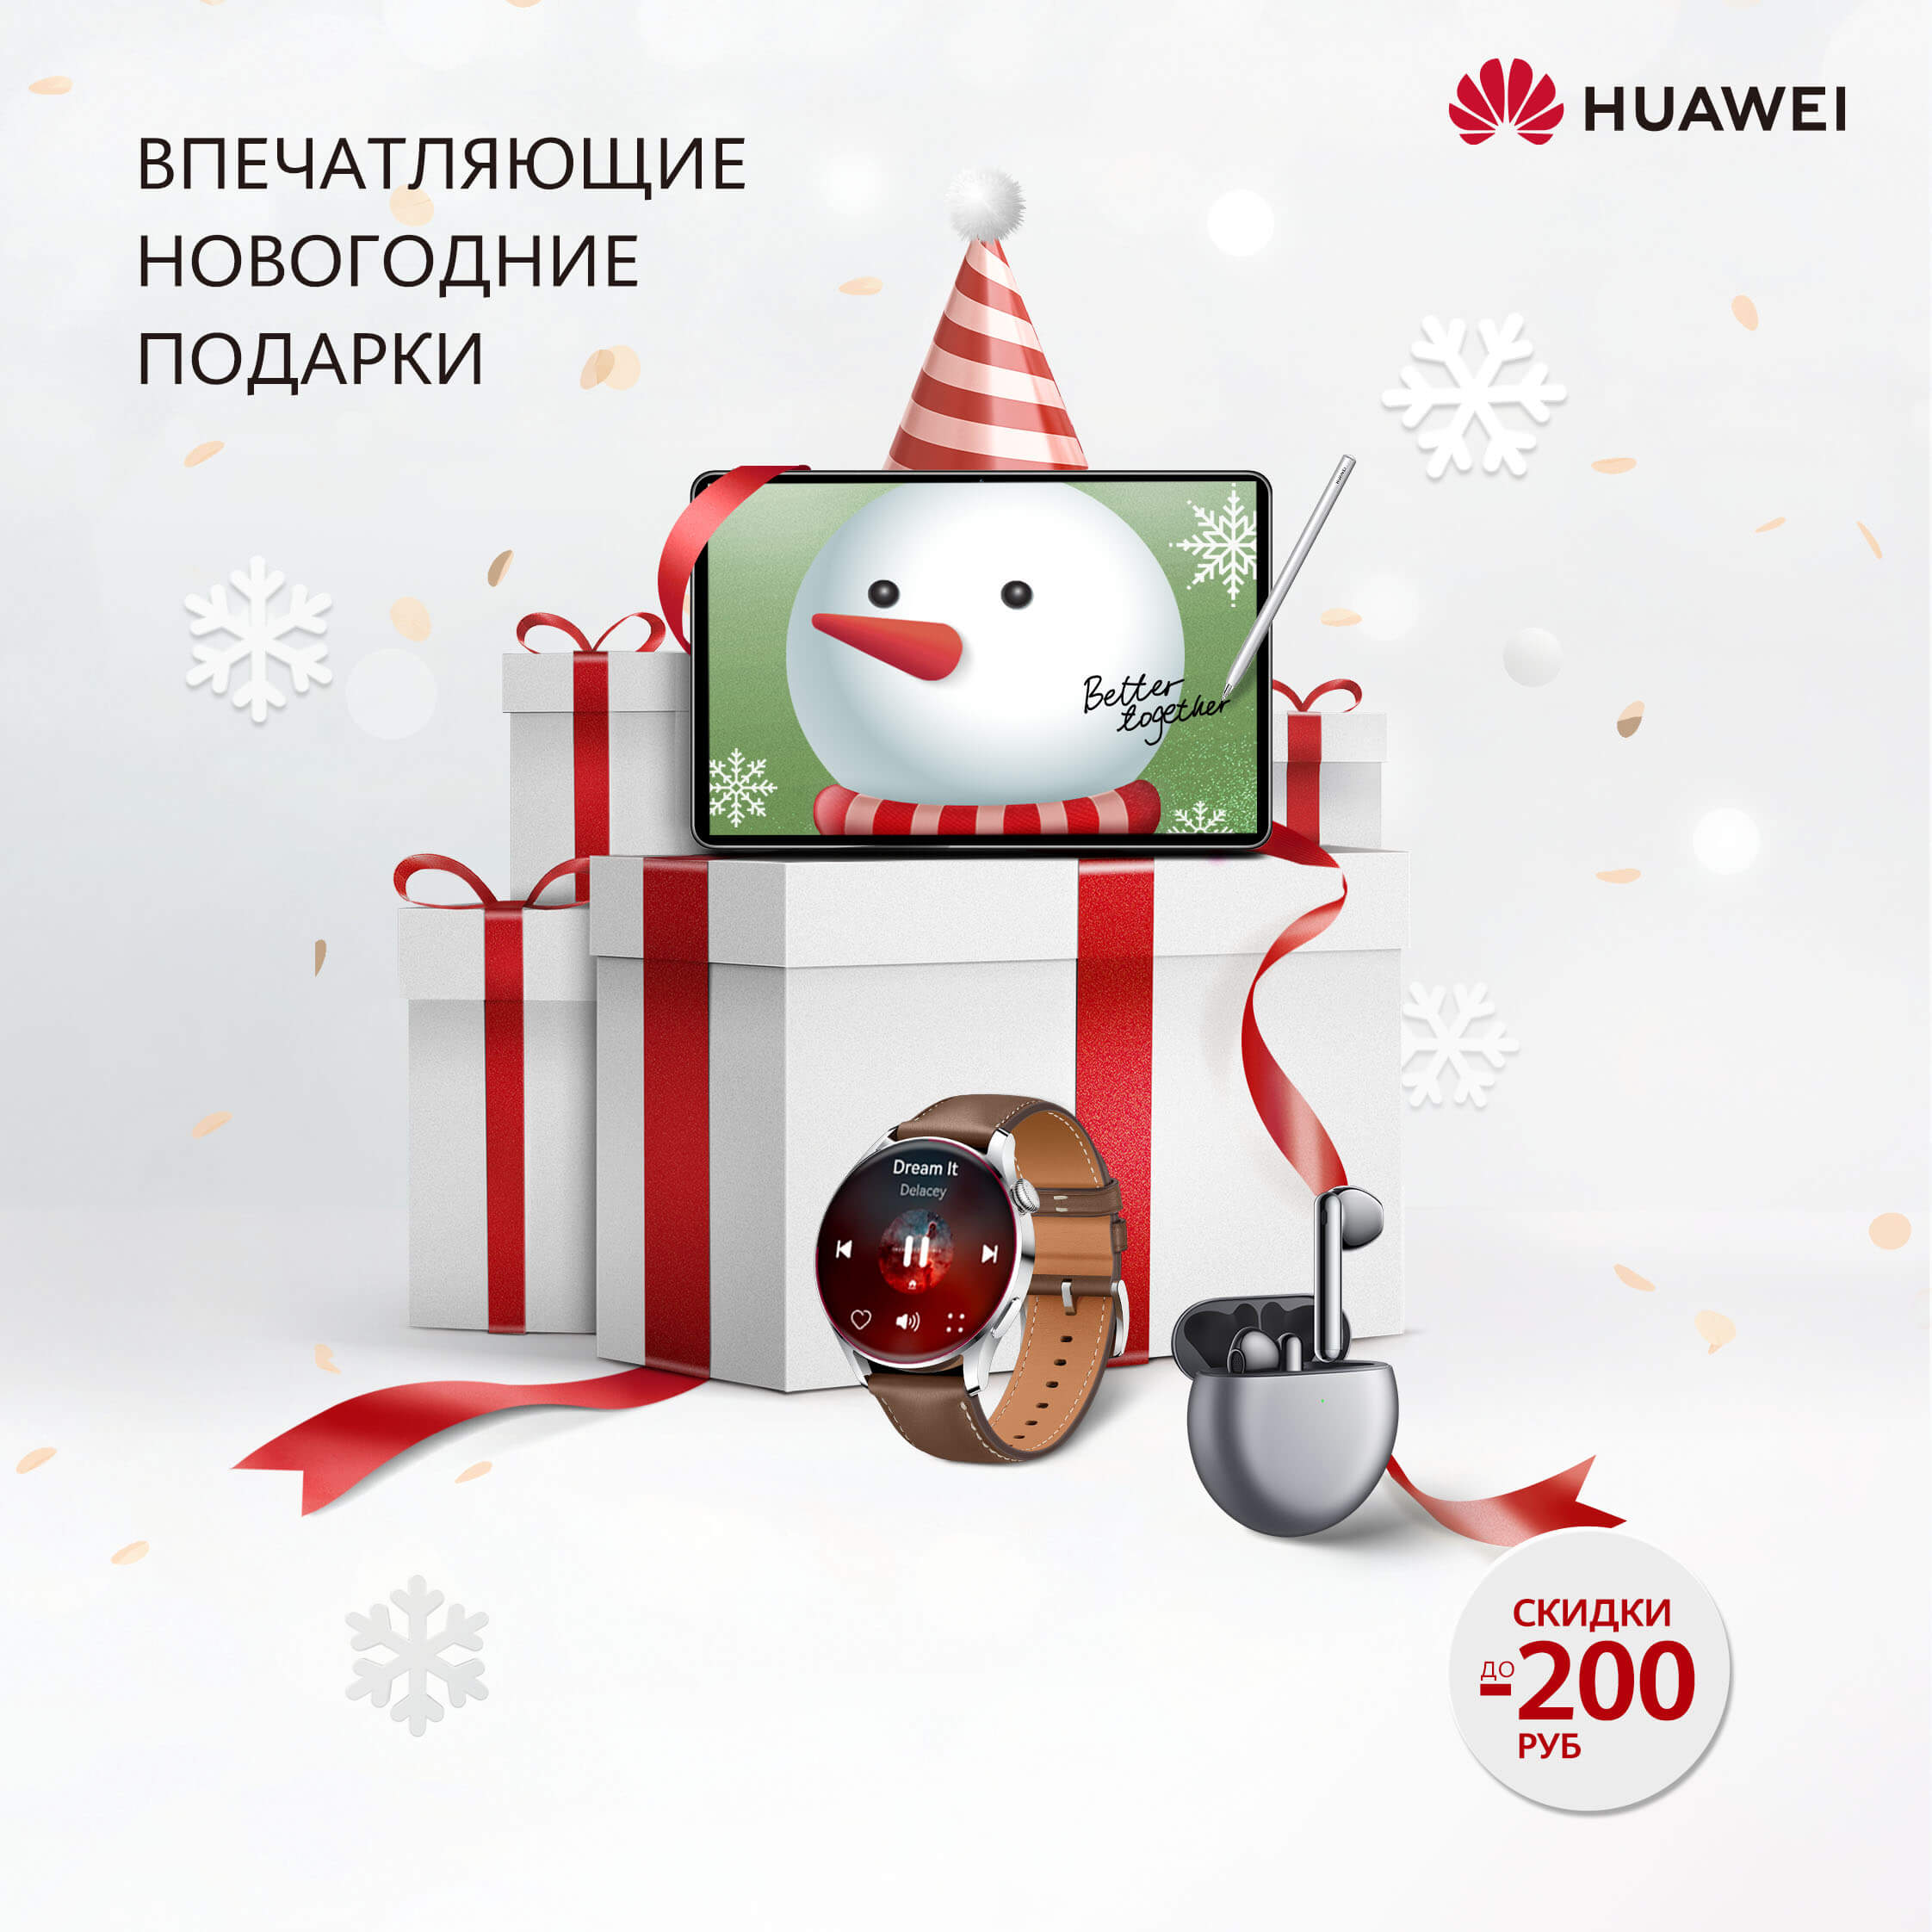 В Беларуси пройдет новогодняя распродажа от HUAWEI. До 10 января на скидках можно будет сэкономить до 200 рублей 2